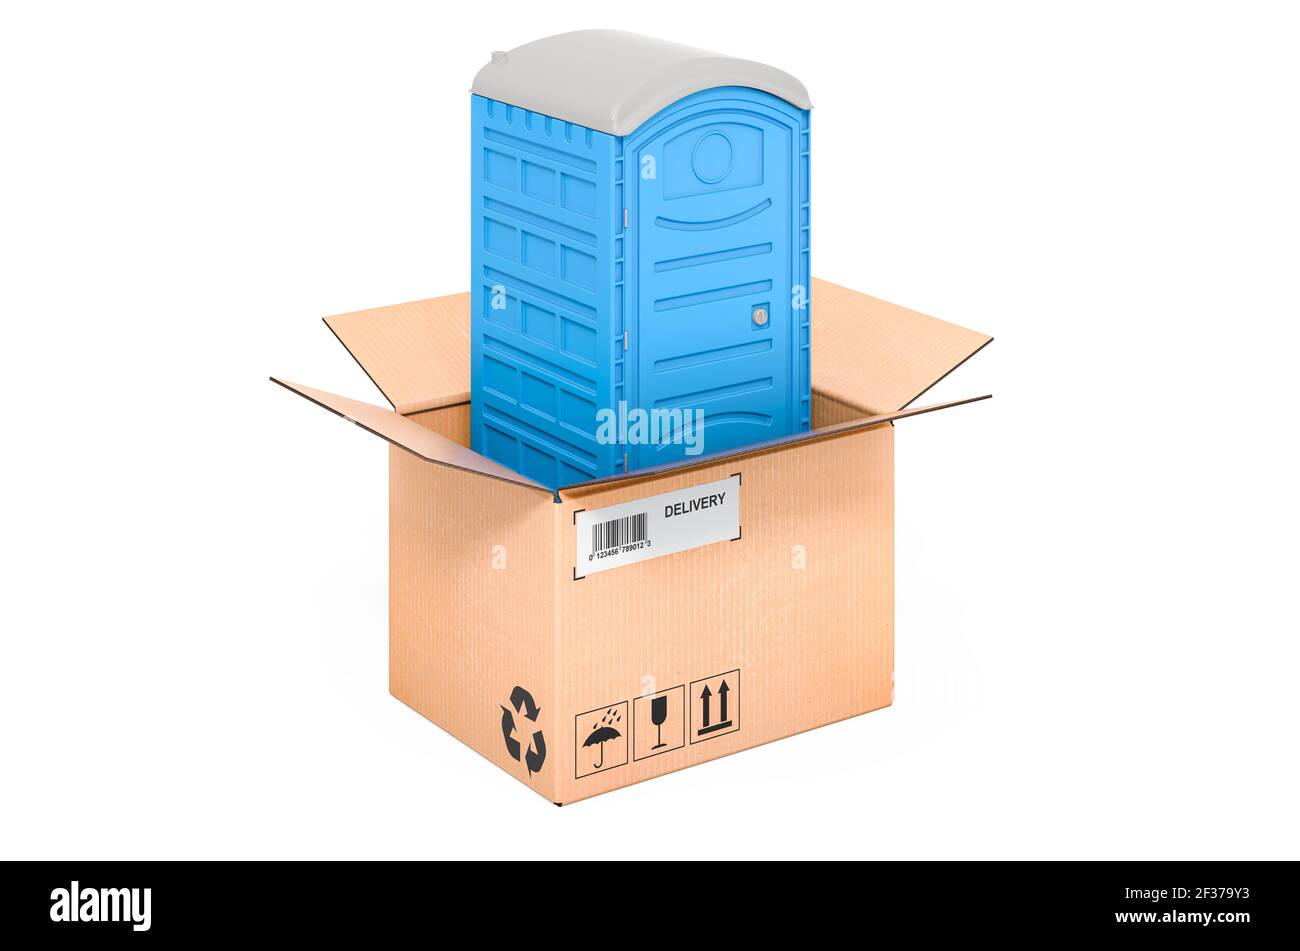 wc portatile in plastica blu all'interno della scatola di cartone, concetto di consegna. Rendering 3D isolato su sfondo bianco Foto Stock